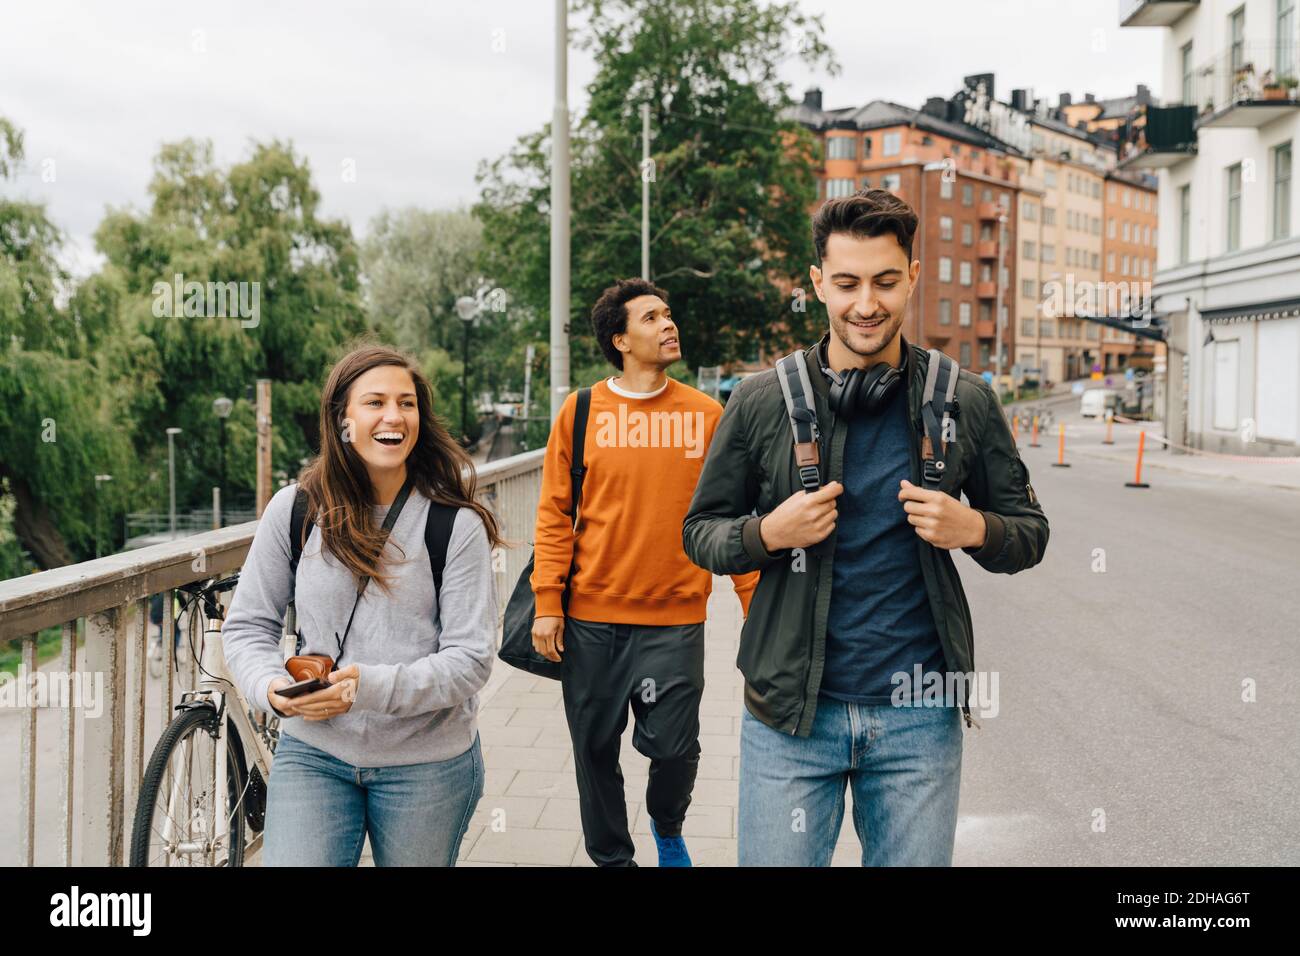 Des amis souriants marchent dans la rue tout en explorant la ville pendant les vacances Banque D'Images